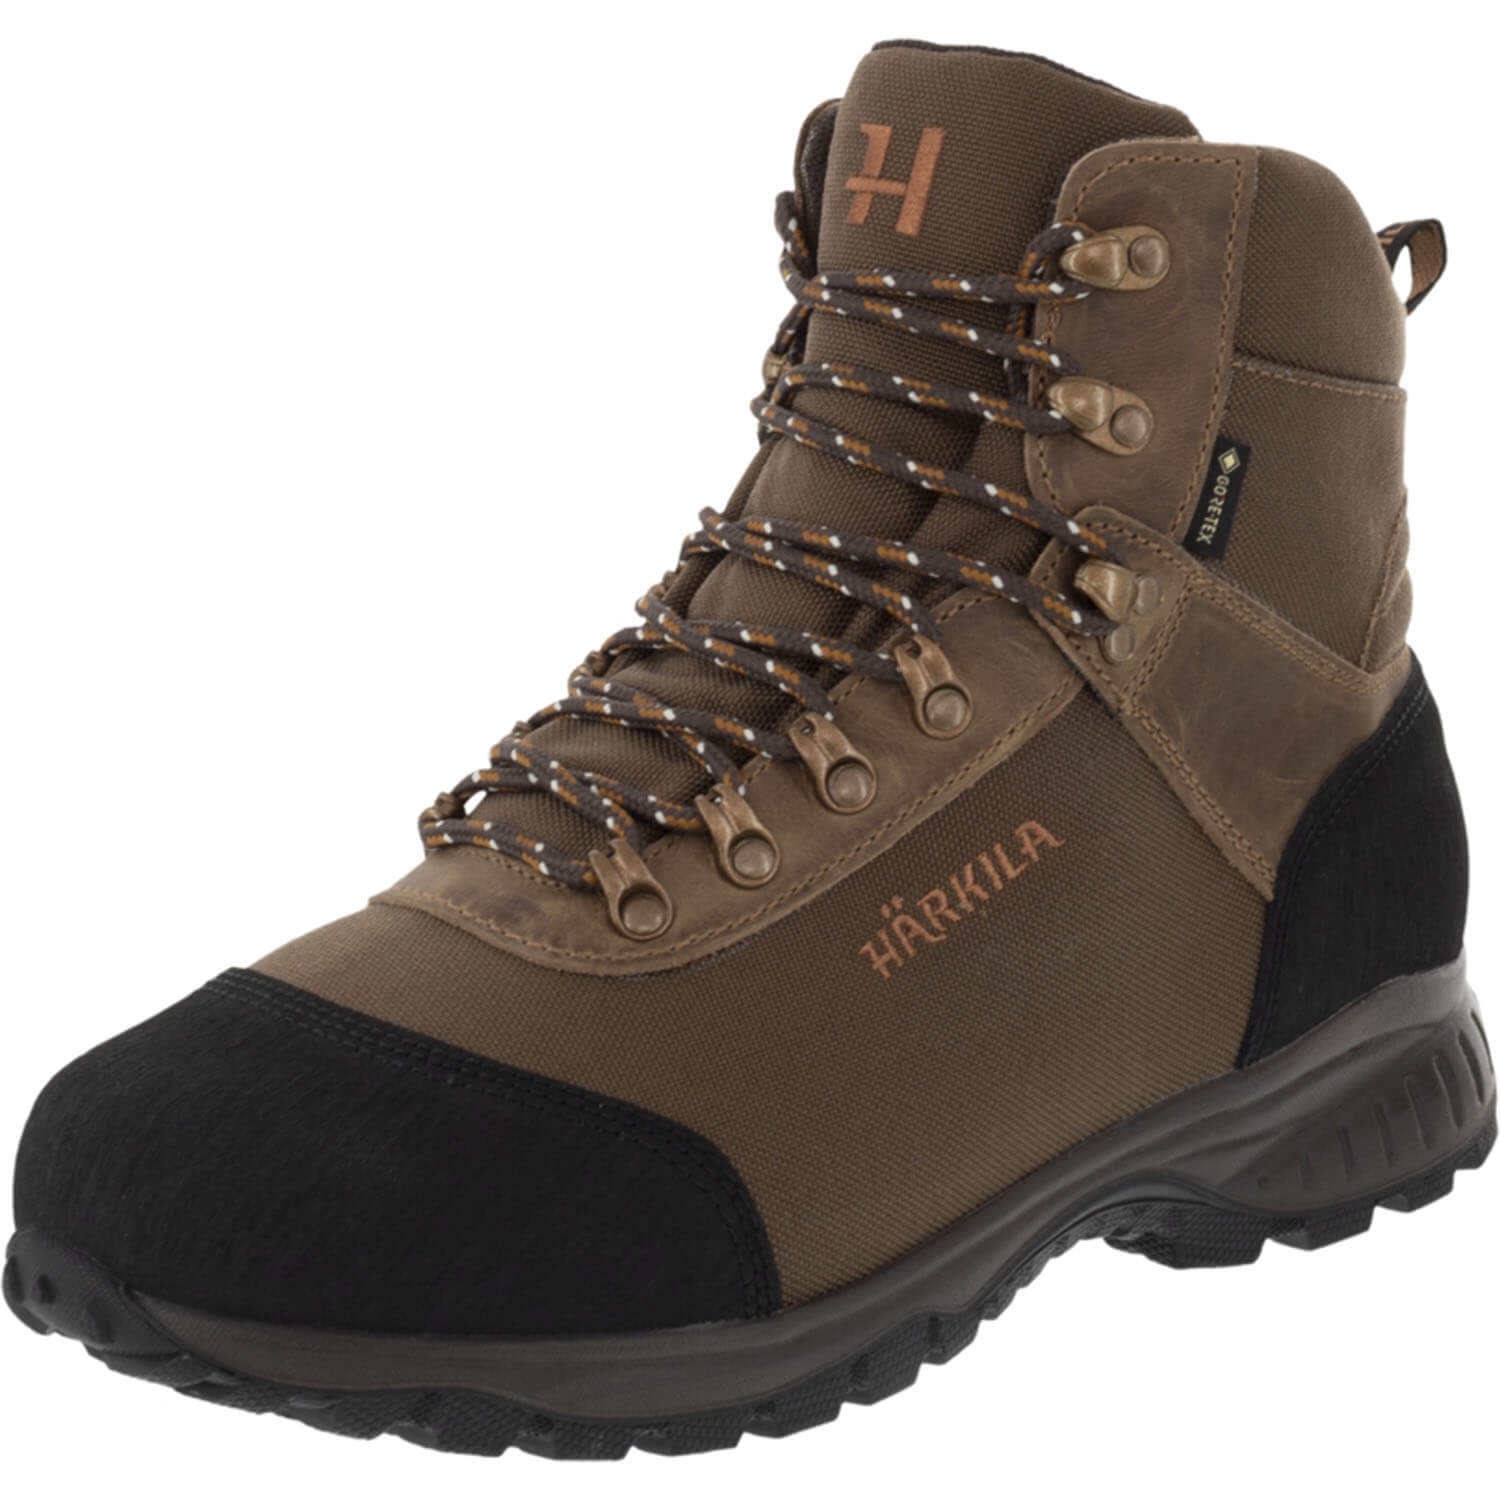 Härkila hunting boots wildwood GTX - Hunting Boots